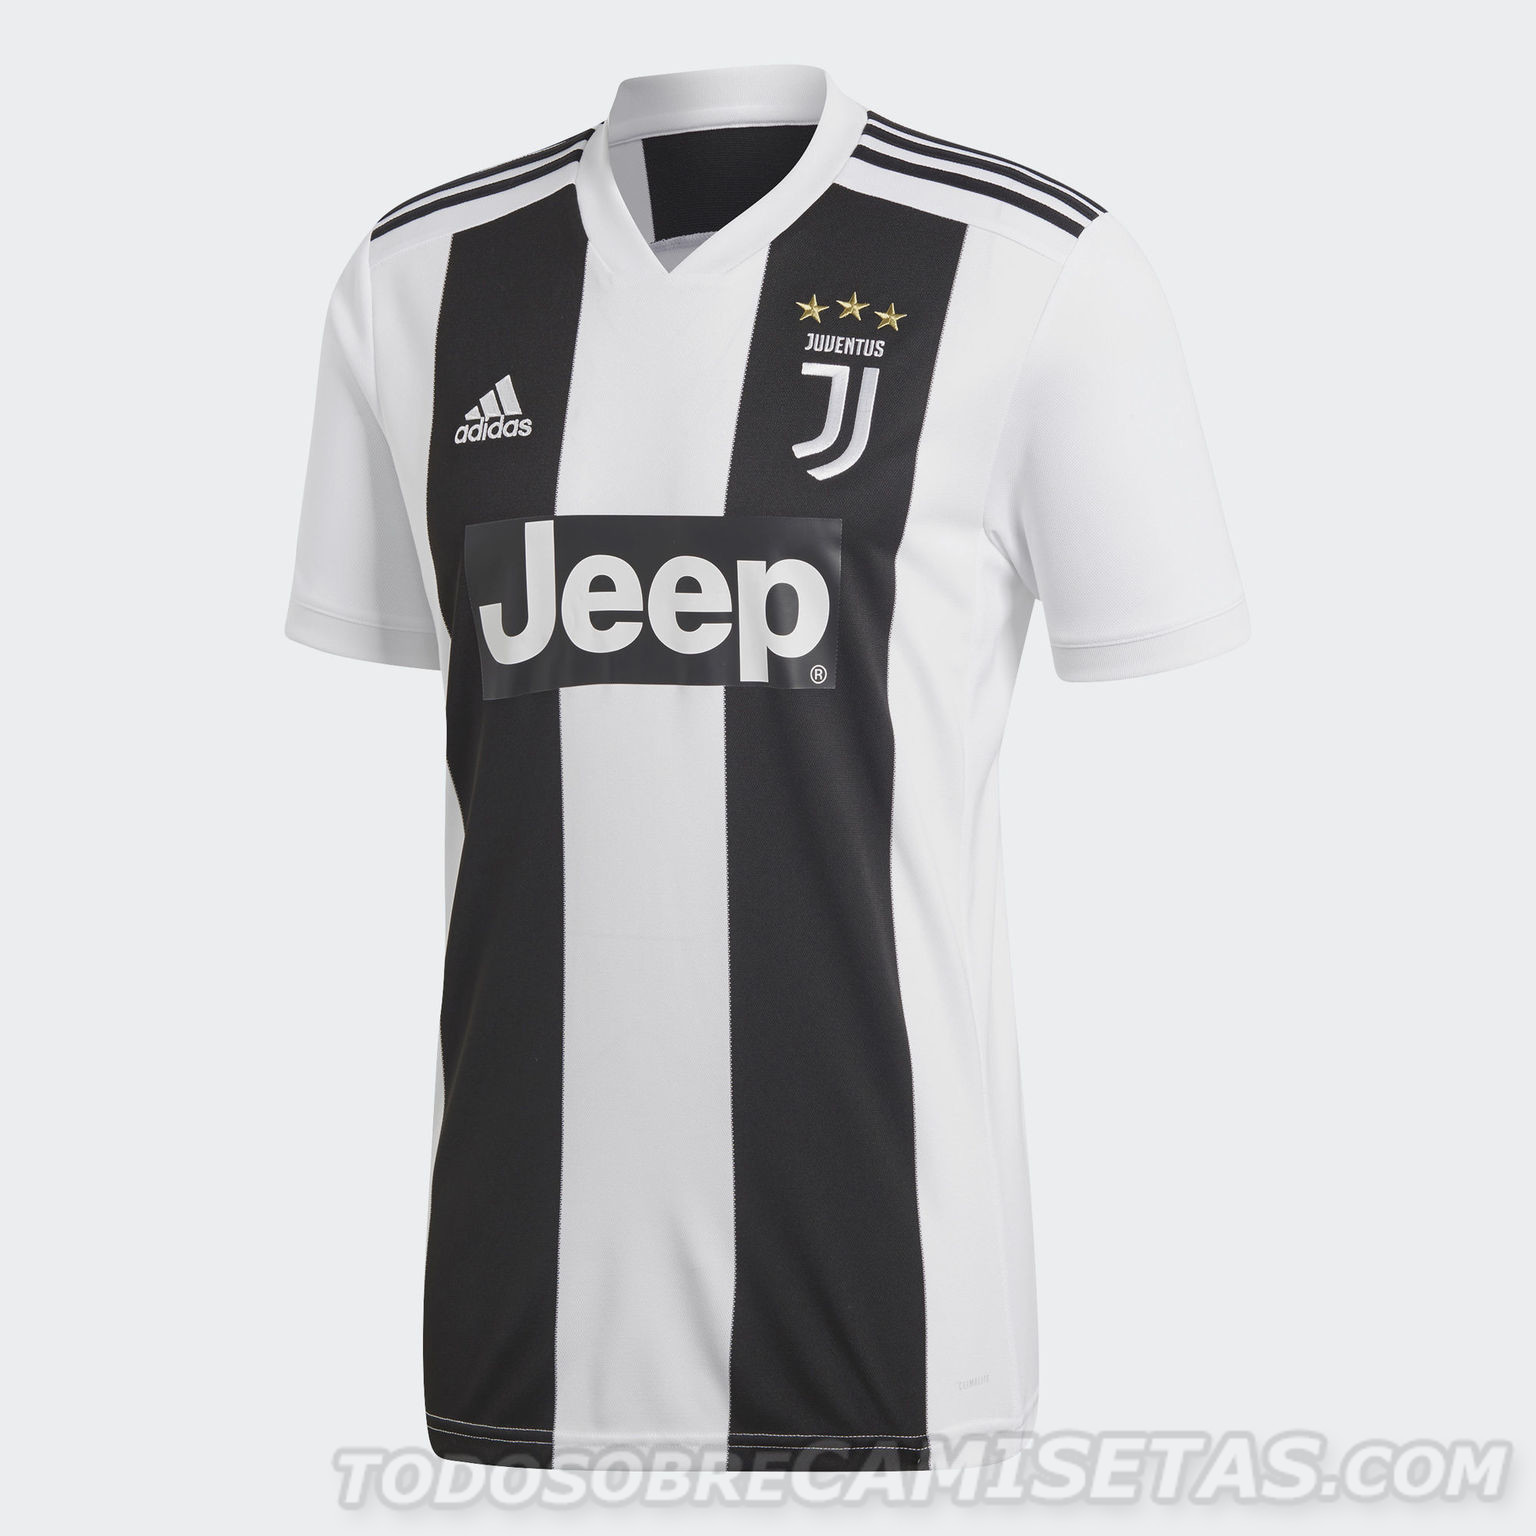 Juventus 2018-19 adidas home kit